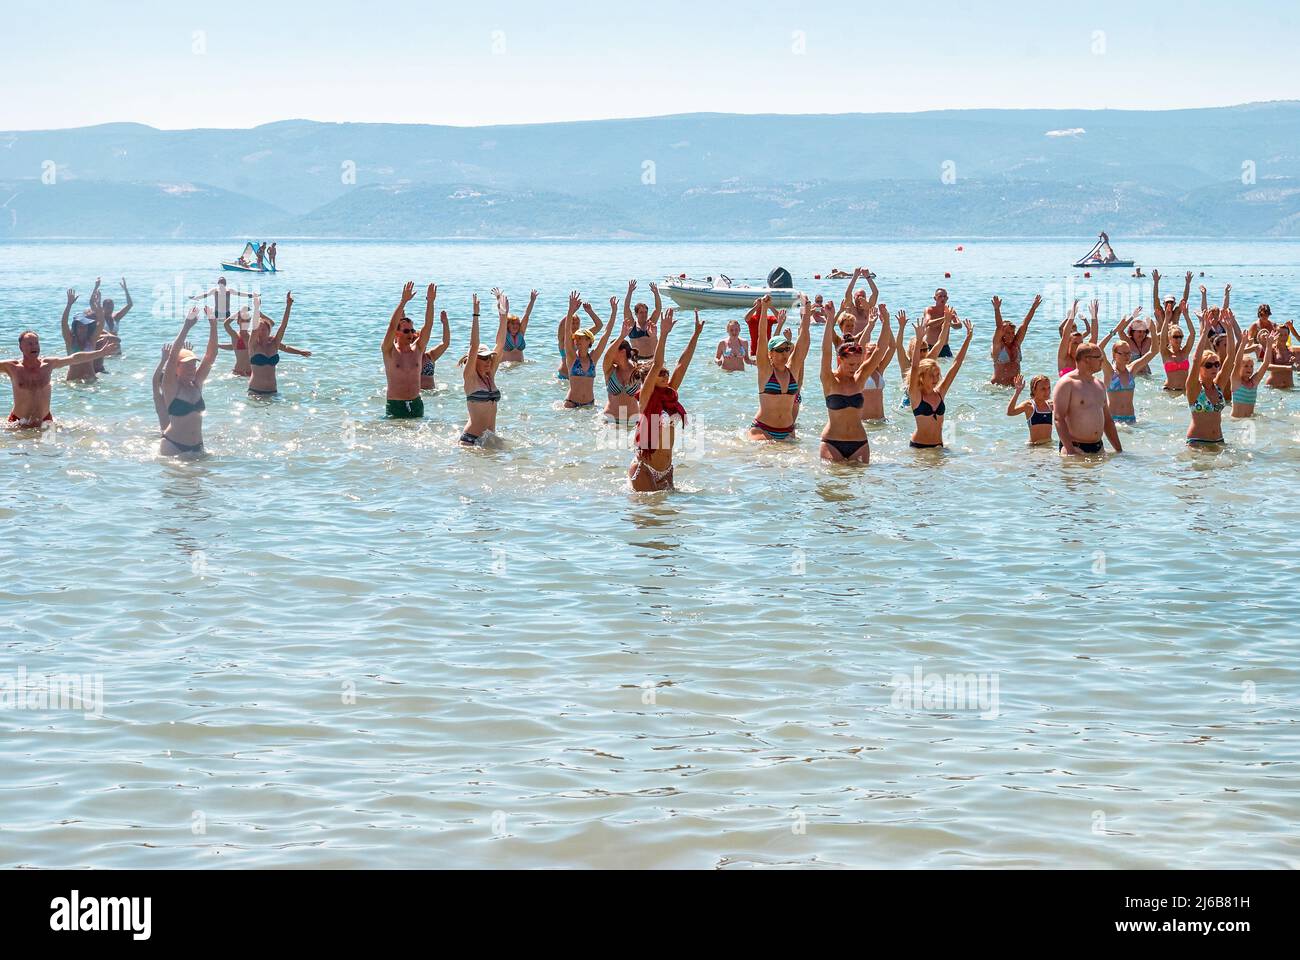 Omis, Kroatien - 19 2013. August: In Omis tanzen die Menschen im Wasser mit dem Animator gegen riesige Berge. Touristen haben Spaß im Meer bei der Party im Sommer vacat Stockfoto